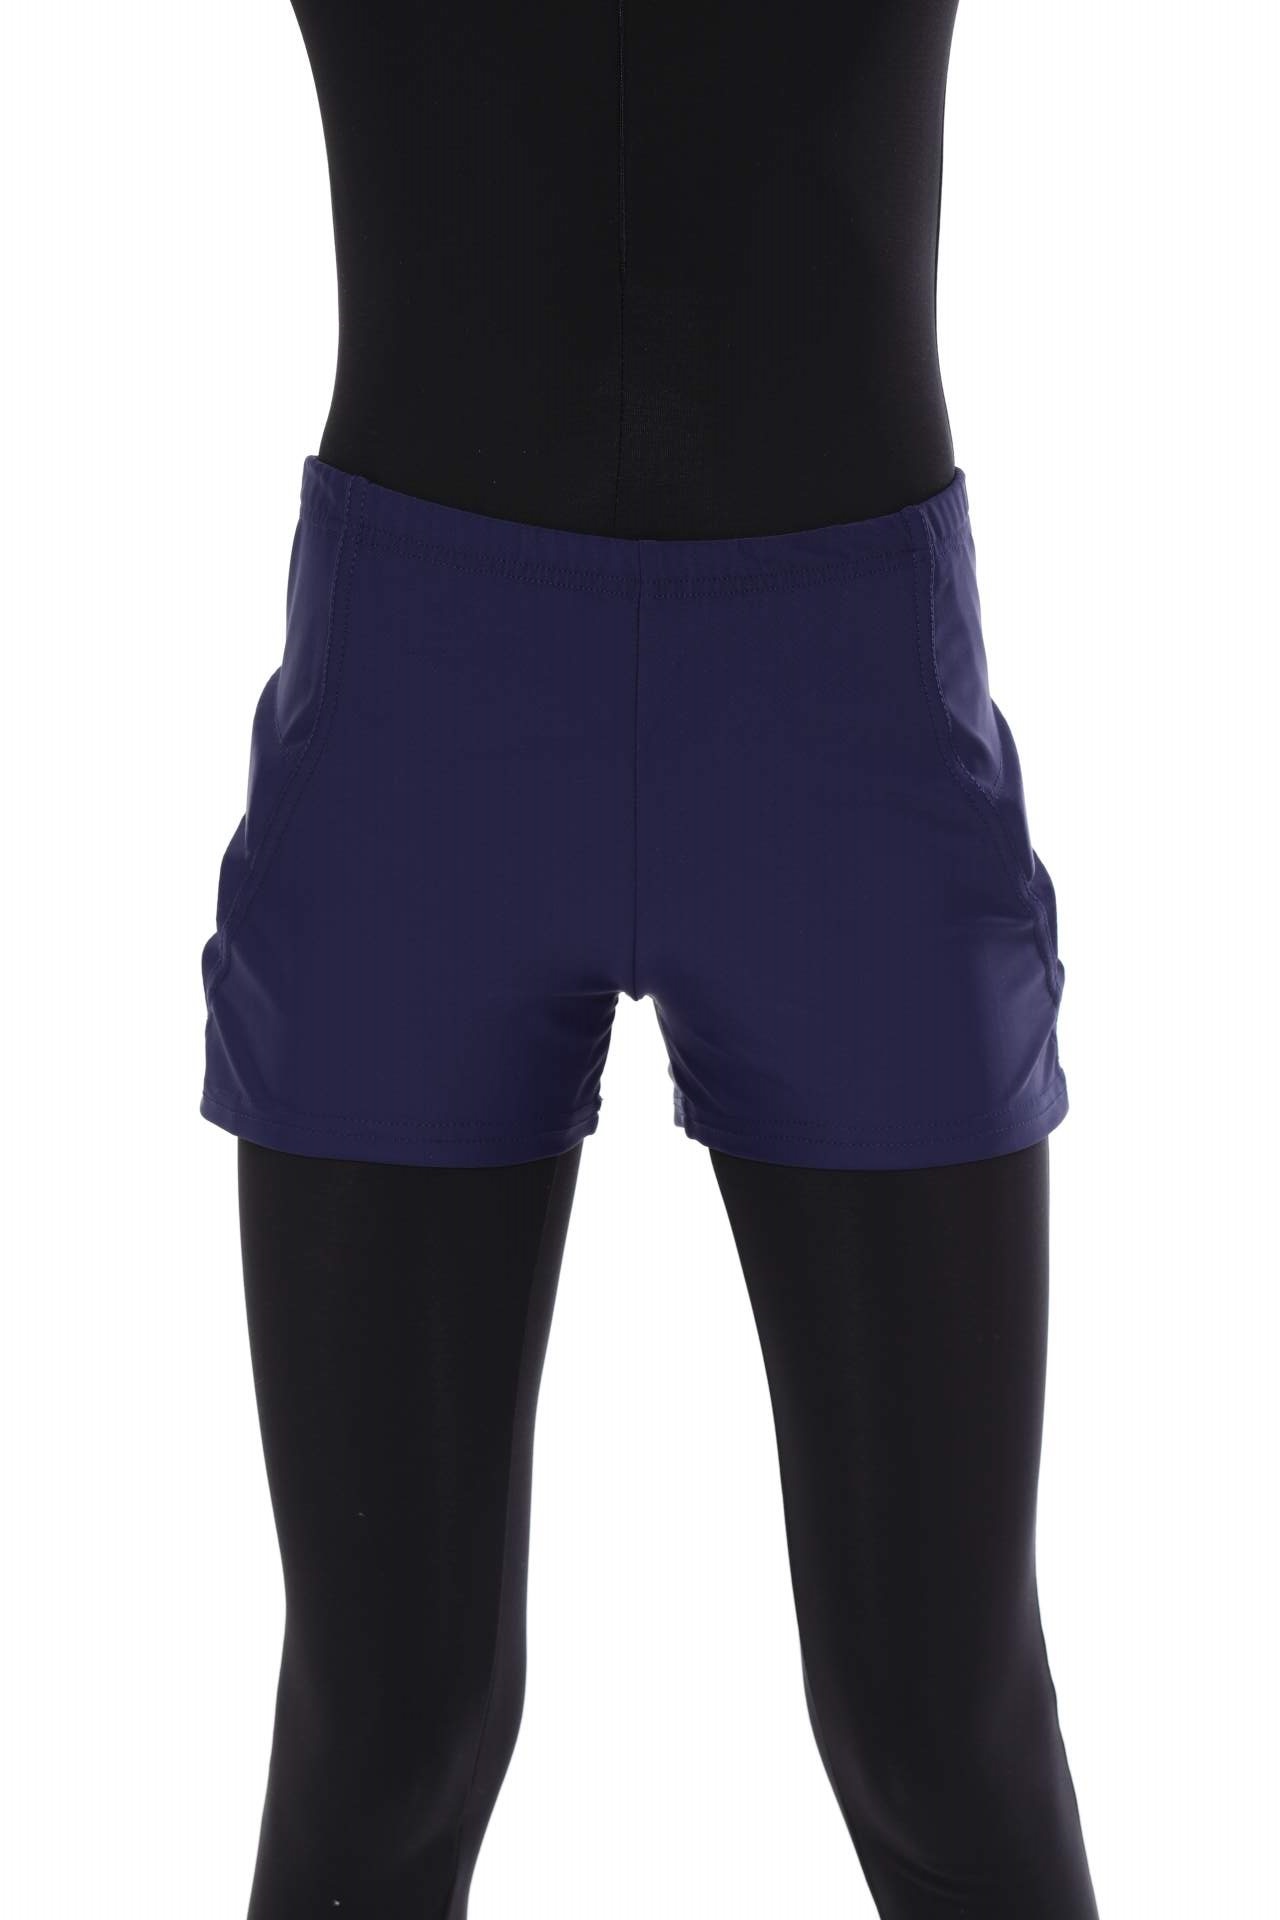 Защитные шорты для фигурного катания и роликов Chersa, цвет: темно-синий 128-134